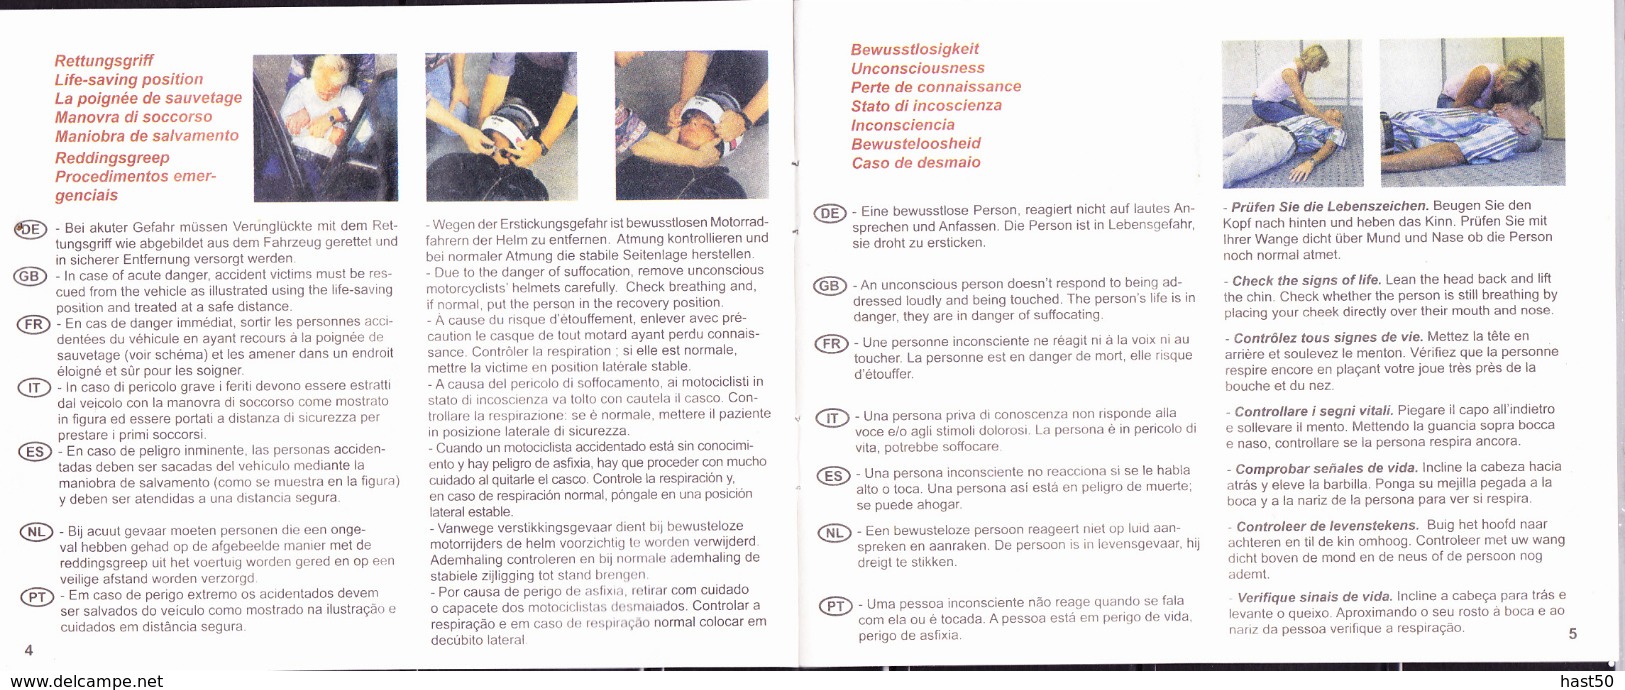 Deutschland Germany Allemagne - DRK  Erste-Hilfe-Ableitung/First Aid Instruction In 7 Sprachen - Medizin & Gesundheit